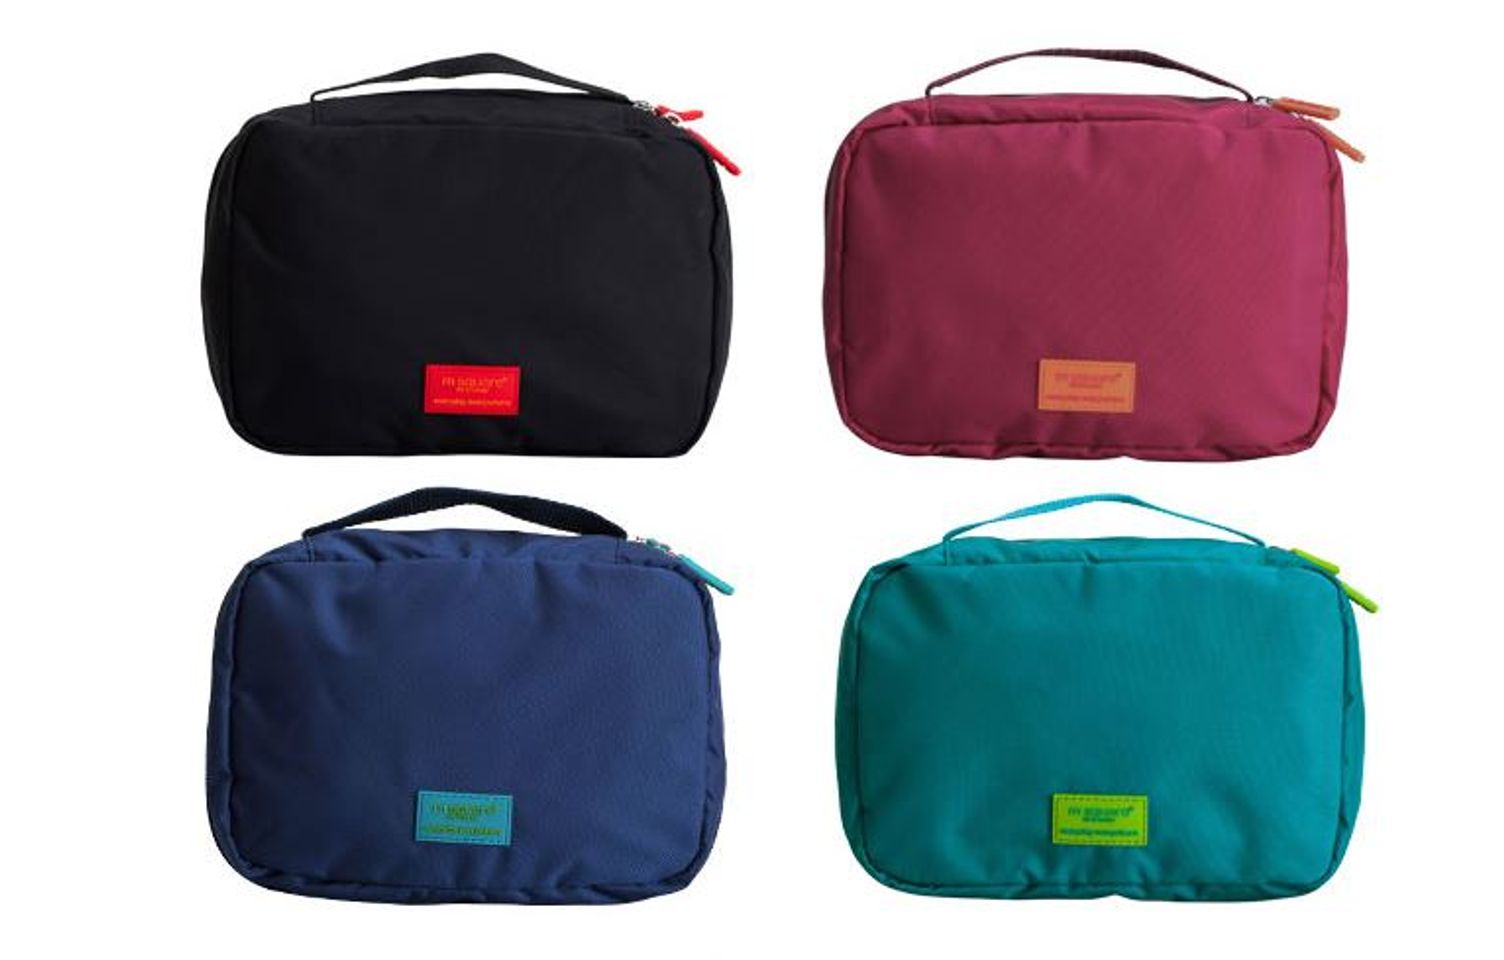 Túi đựng đồ trang điểm Msquare với nhiều màu đẹp và dáng vuông vắn, túi dùng được cho cả nam và nữ